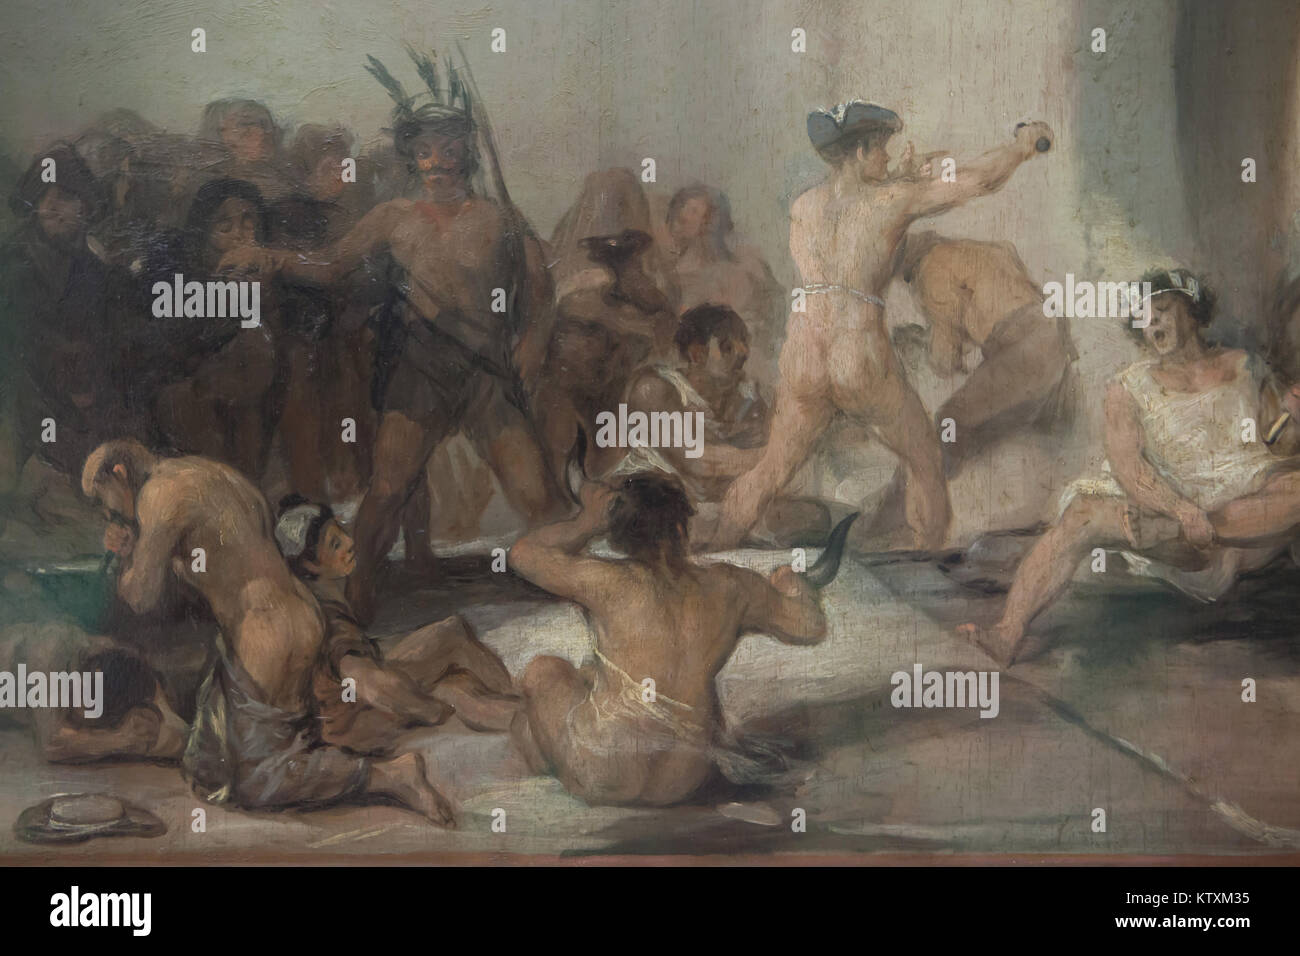 Psychisch kranke Personen im Detail des Gemäldes dargestellt "Irrenhaus" von spanischen Maler Francisco Goya (Ca. 1812-1819), die in der Real Academia de Bellas Artes de San Fernando (Königliche Akademie der Schönen Künste von San Fernando) in Madrid, Spanien. Stockfoto